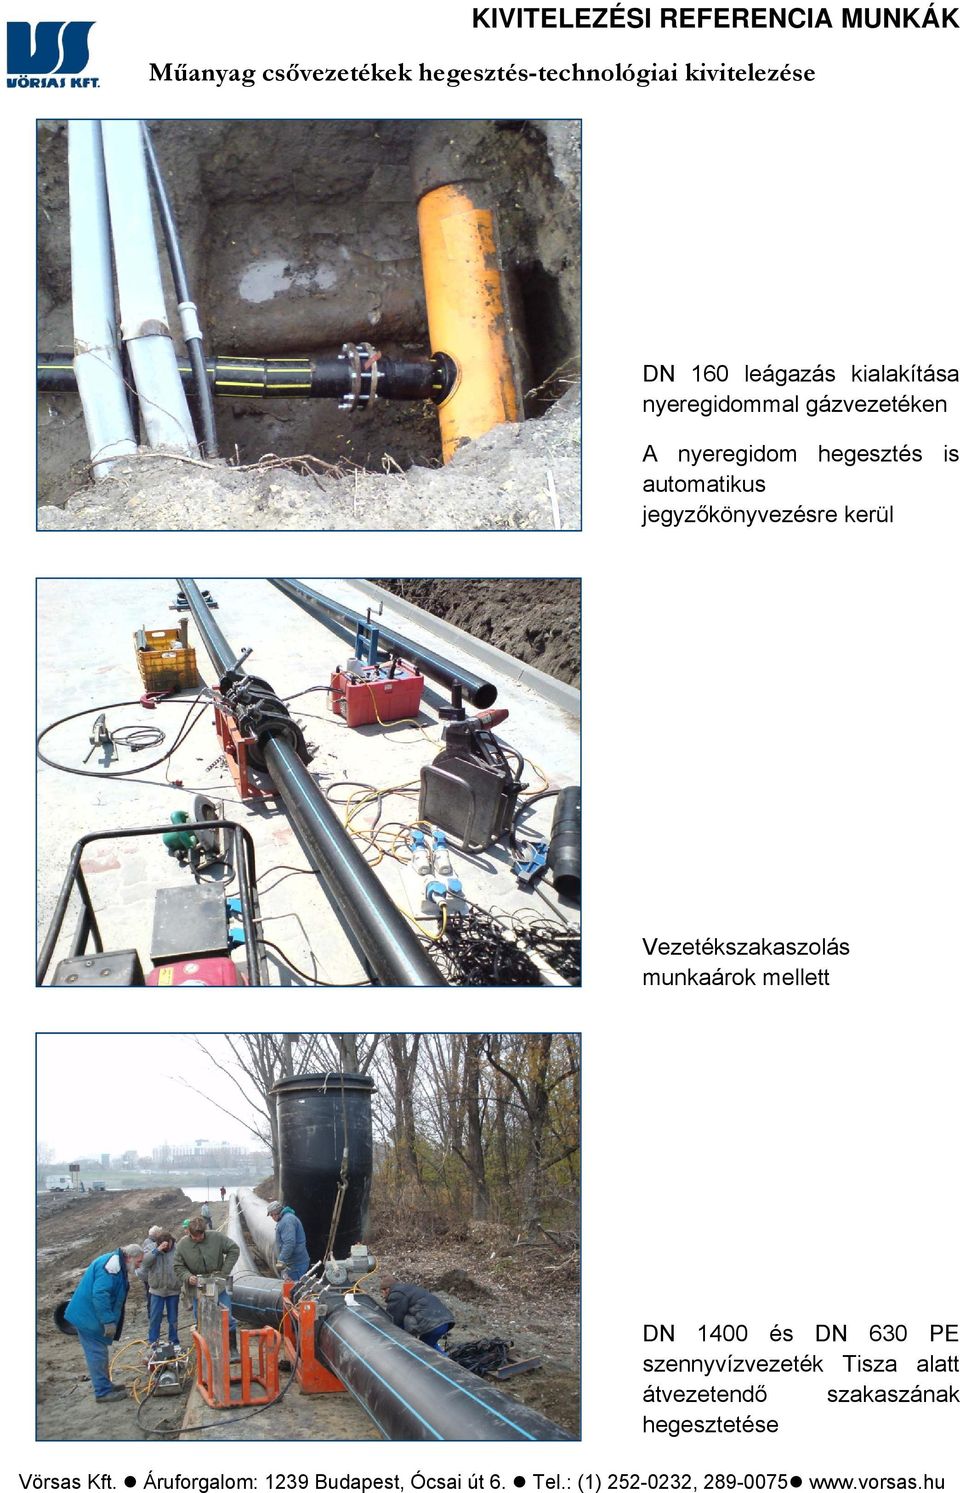 Vezetékszakaszolás munkaárok mellett DN 1400 és DN 630 PE szennyvízvezeték Tisza alatt átvezetendő